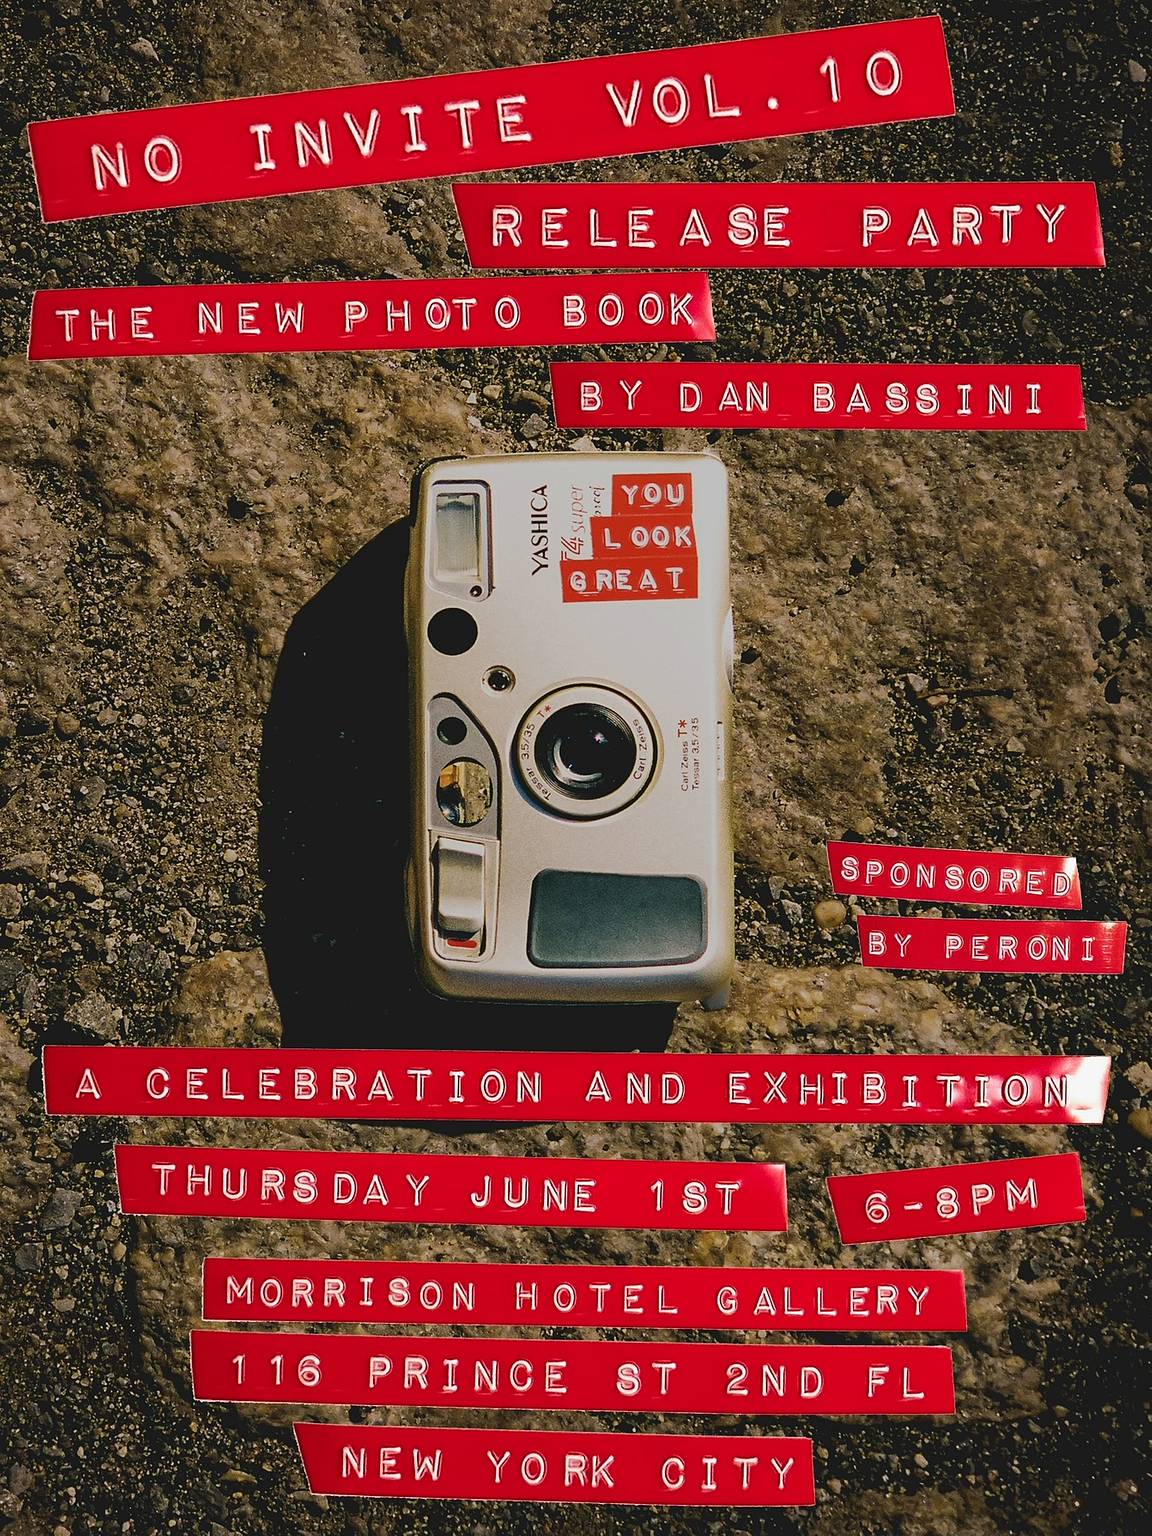 Dan Bassini’s "No Invite Vol. 10" Celebration  + Exhibition